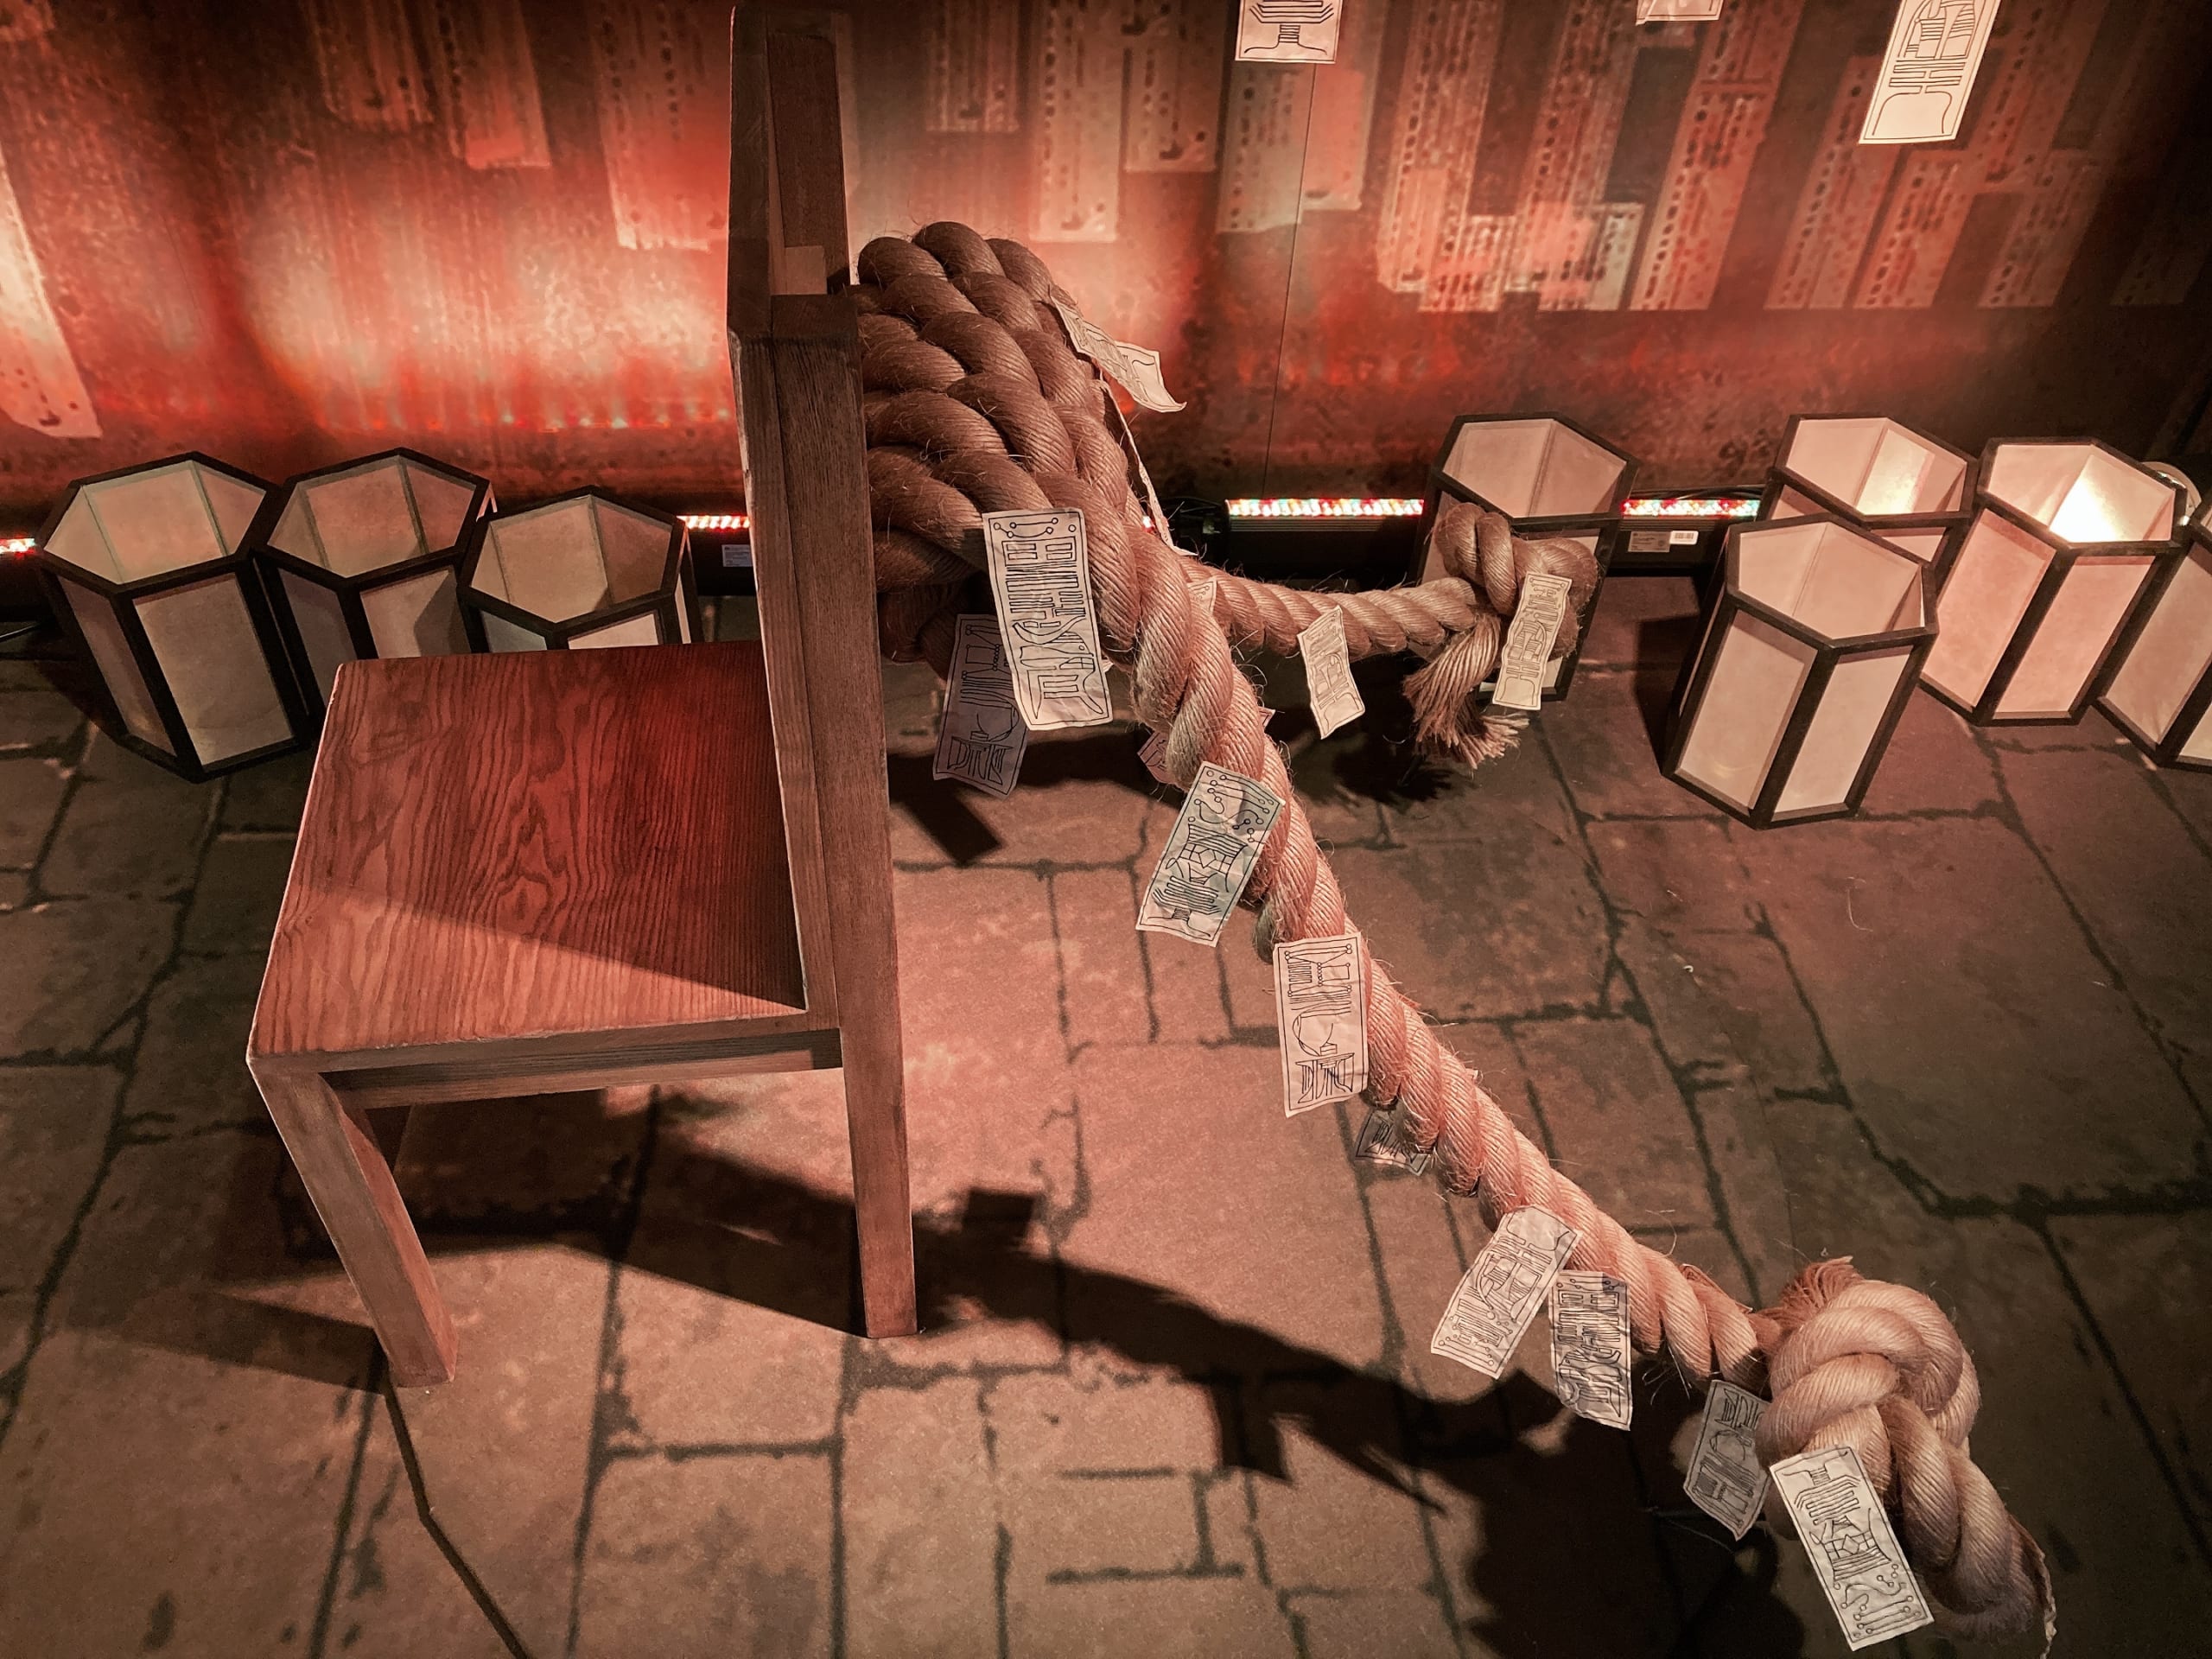 「アニメ 呪術廻戦展」虎杖が座っていた椅子アップ